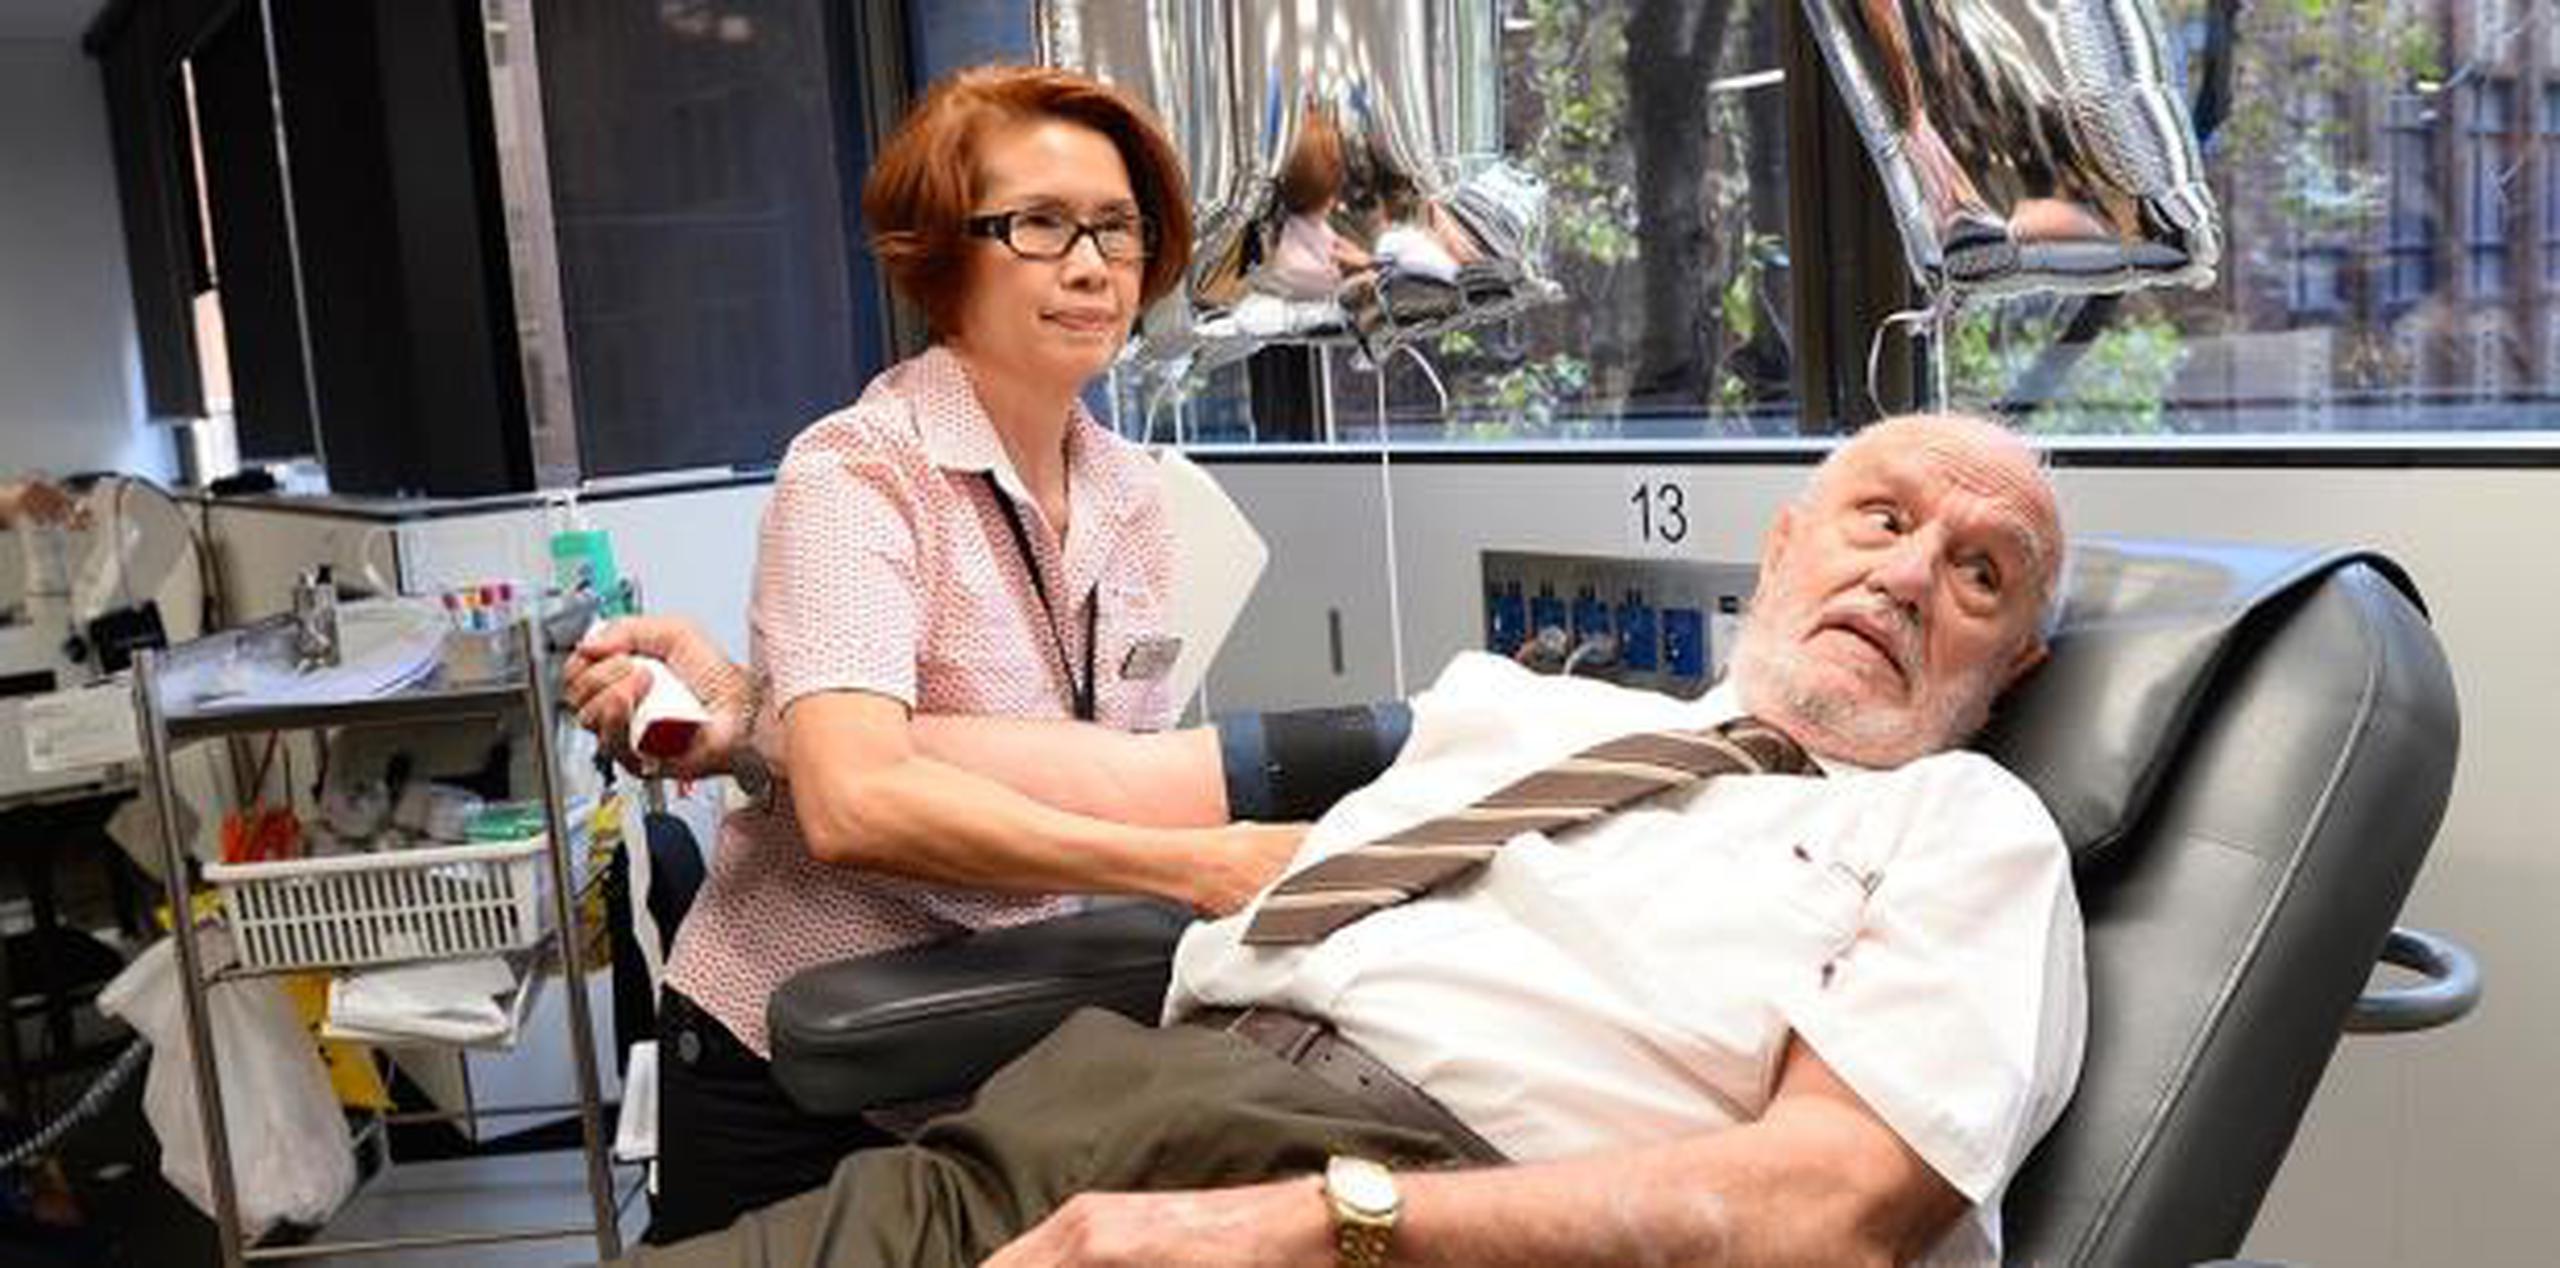 El australiano decidió convertirse en donante luego de someterse a una cirugía de tórax en la cual dependió de las transfusiones de sangre de otras personas para salvar su vida. (AP)